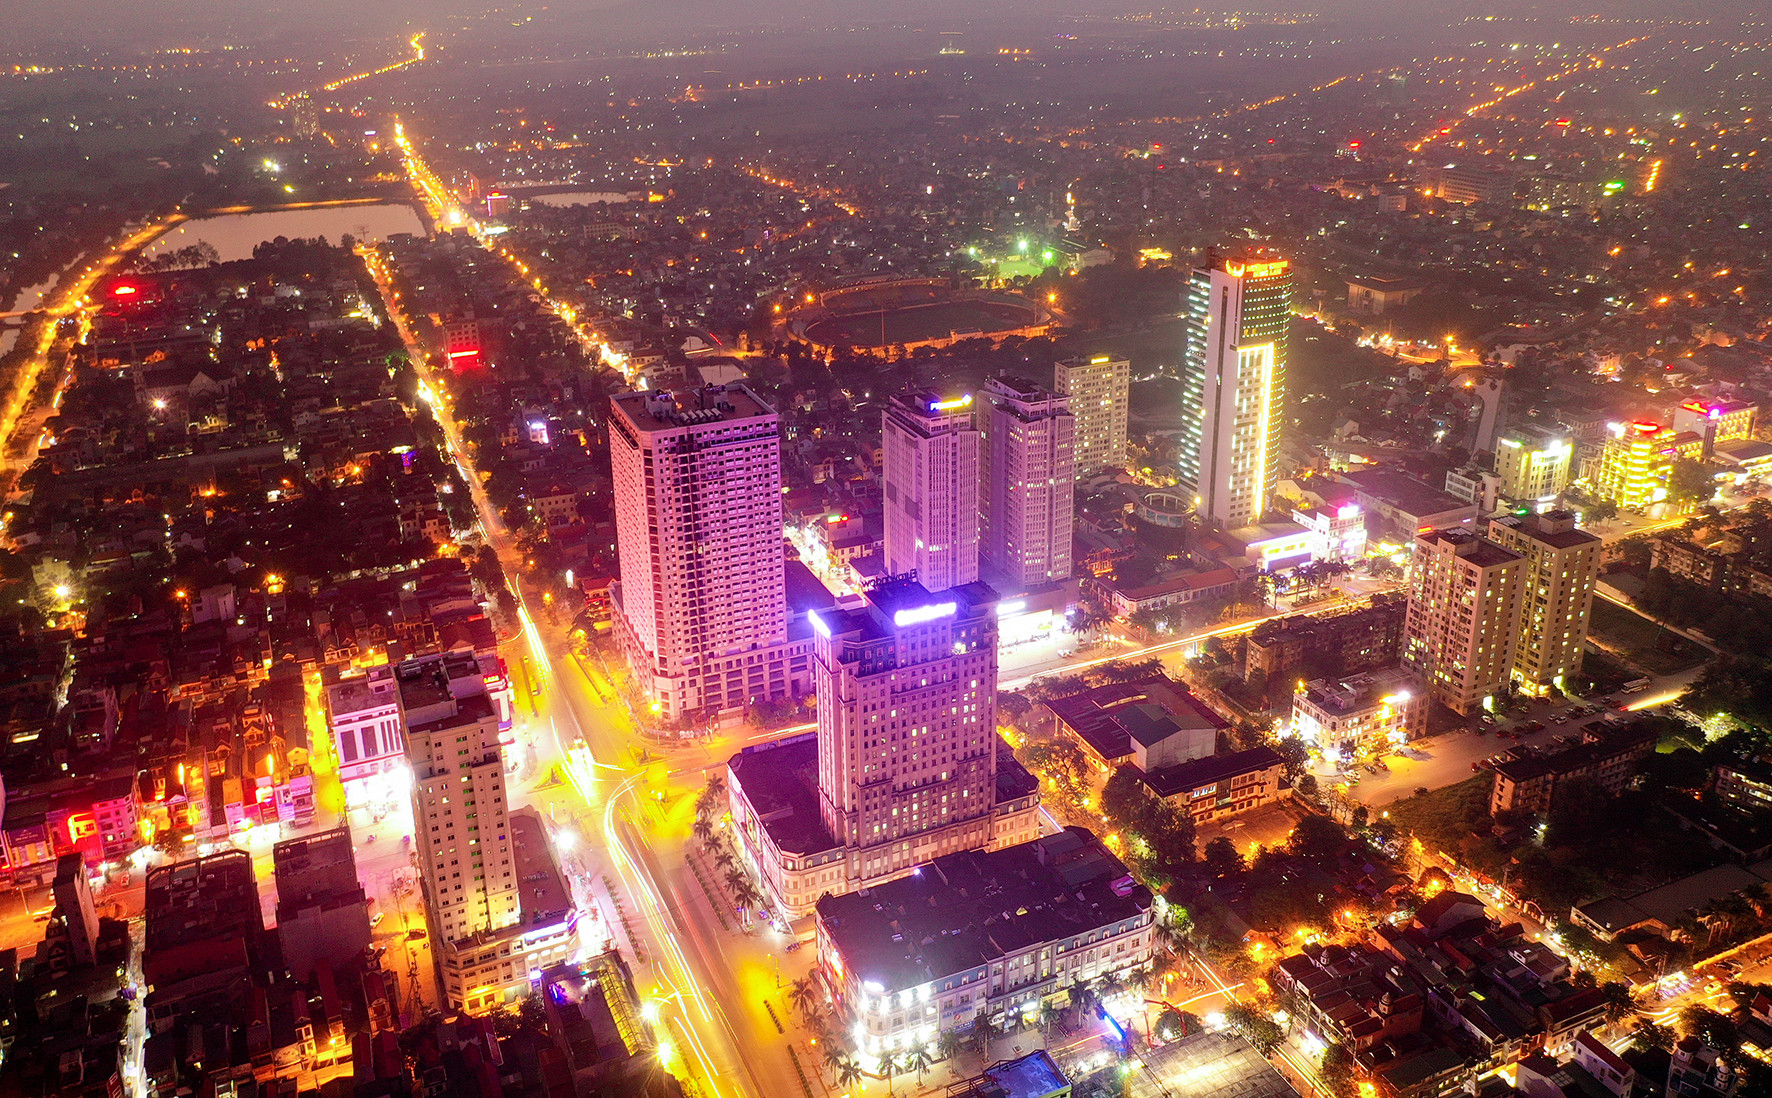 bna_chính.Thành phố Vinh rực rỡ về đêm ảnh Sách Nguyễn.jpeg